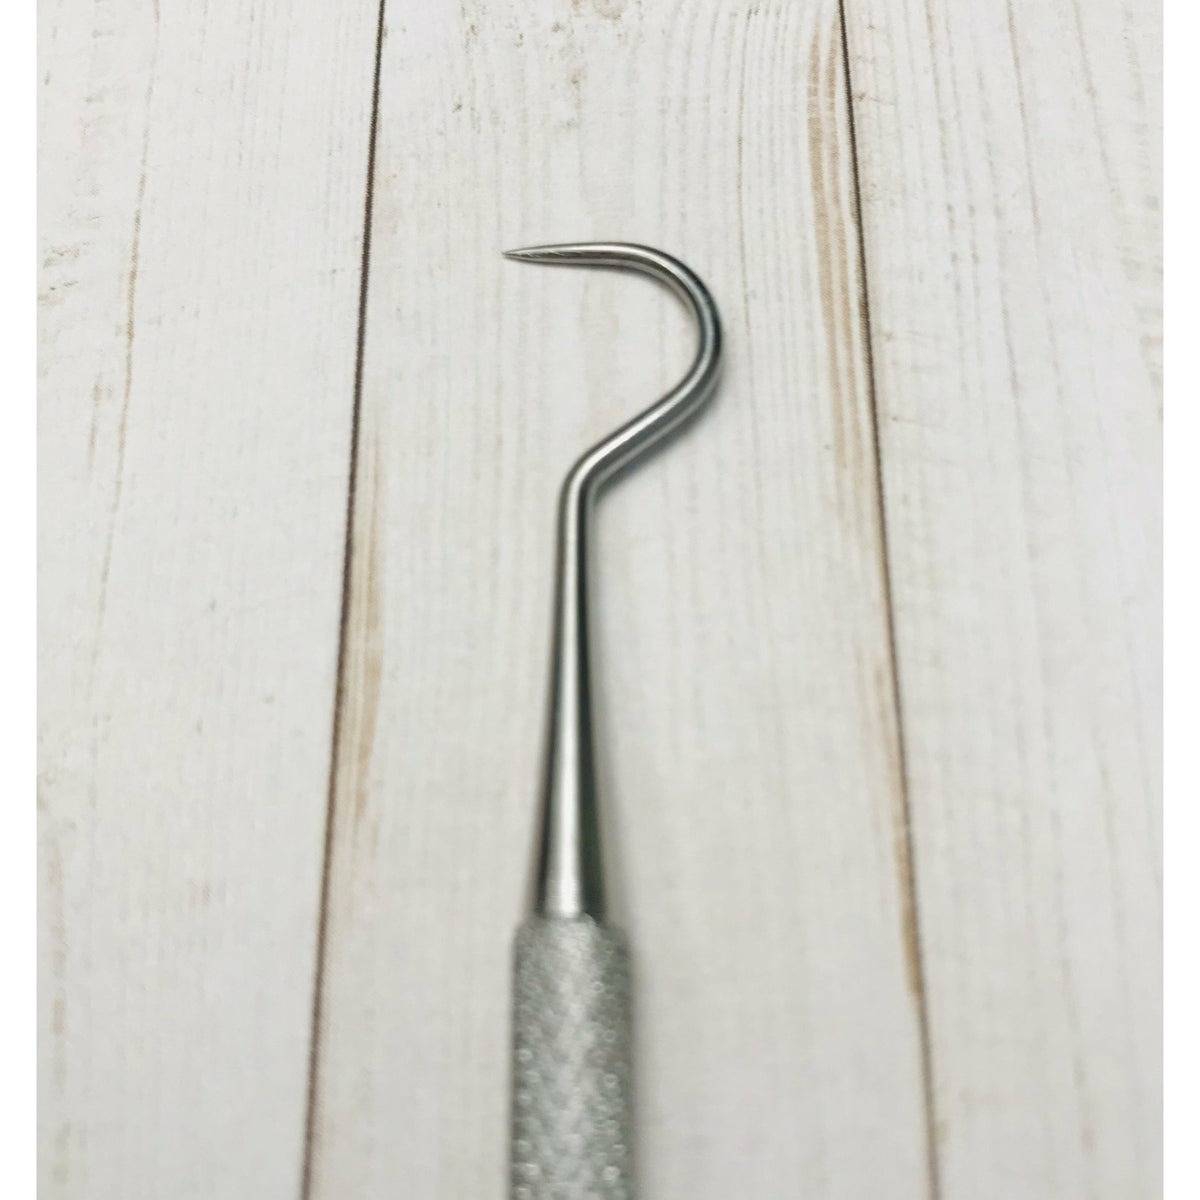 Metal Hook Tool – pickypumicestone